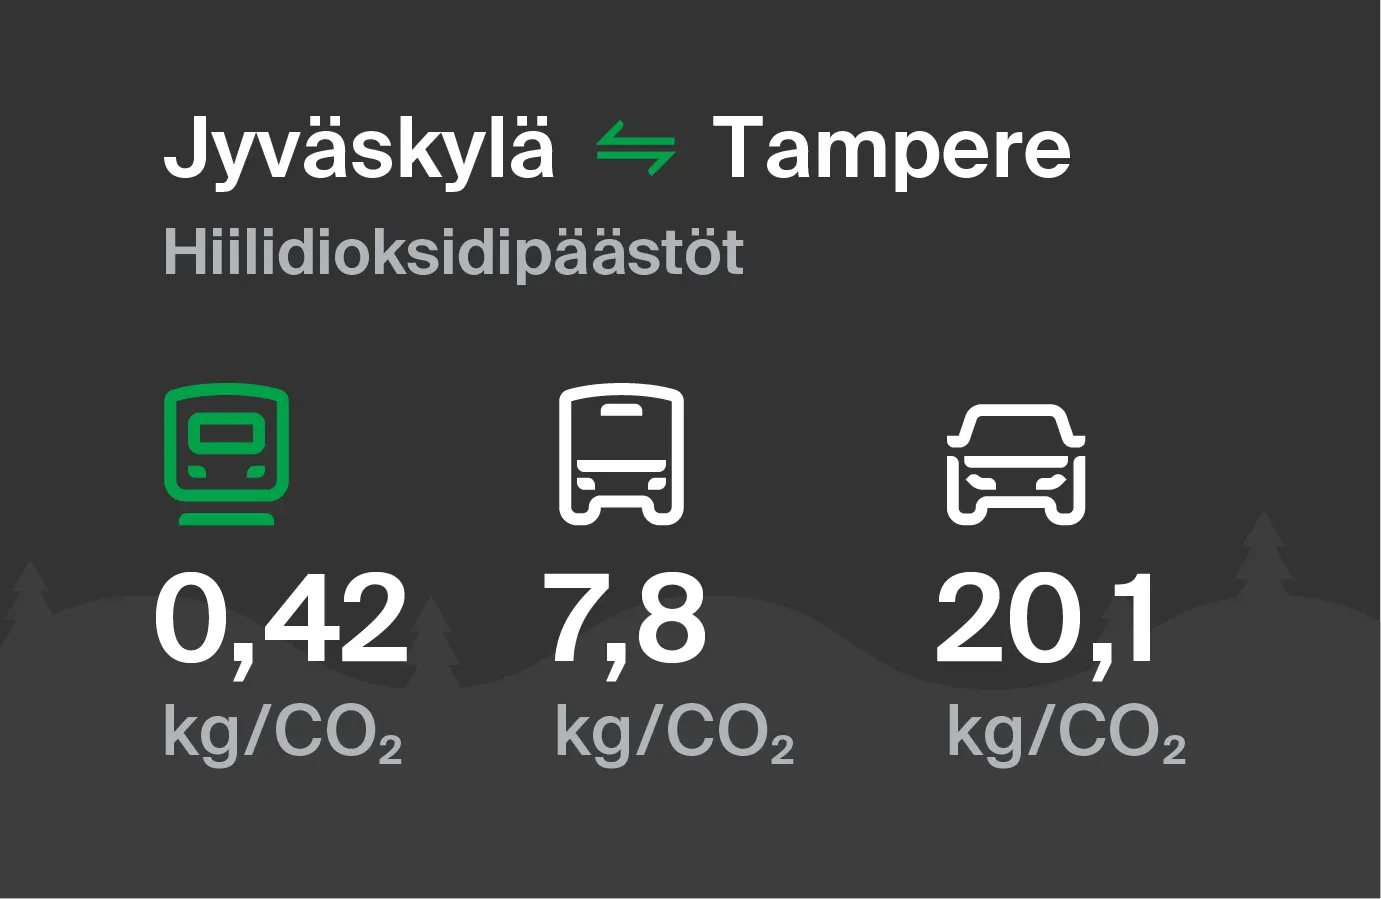 Hiilidioksidipäästöt Jyväskylästä Tampereelle eri kulkuvälinemuodoilla: junalla 0,42 kg/CO2, bussilla 7,8kg/CO2 ja autolla 20,1 kg/CO2.